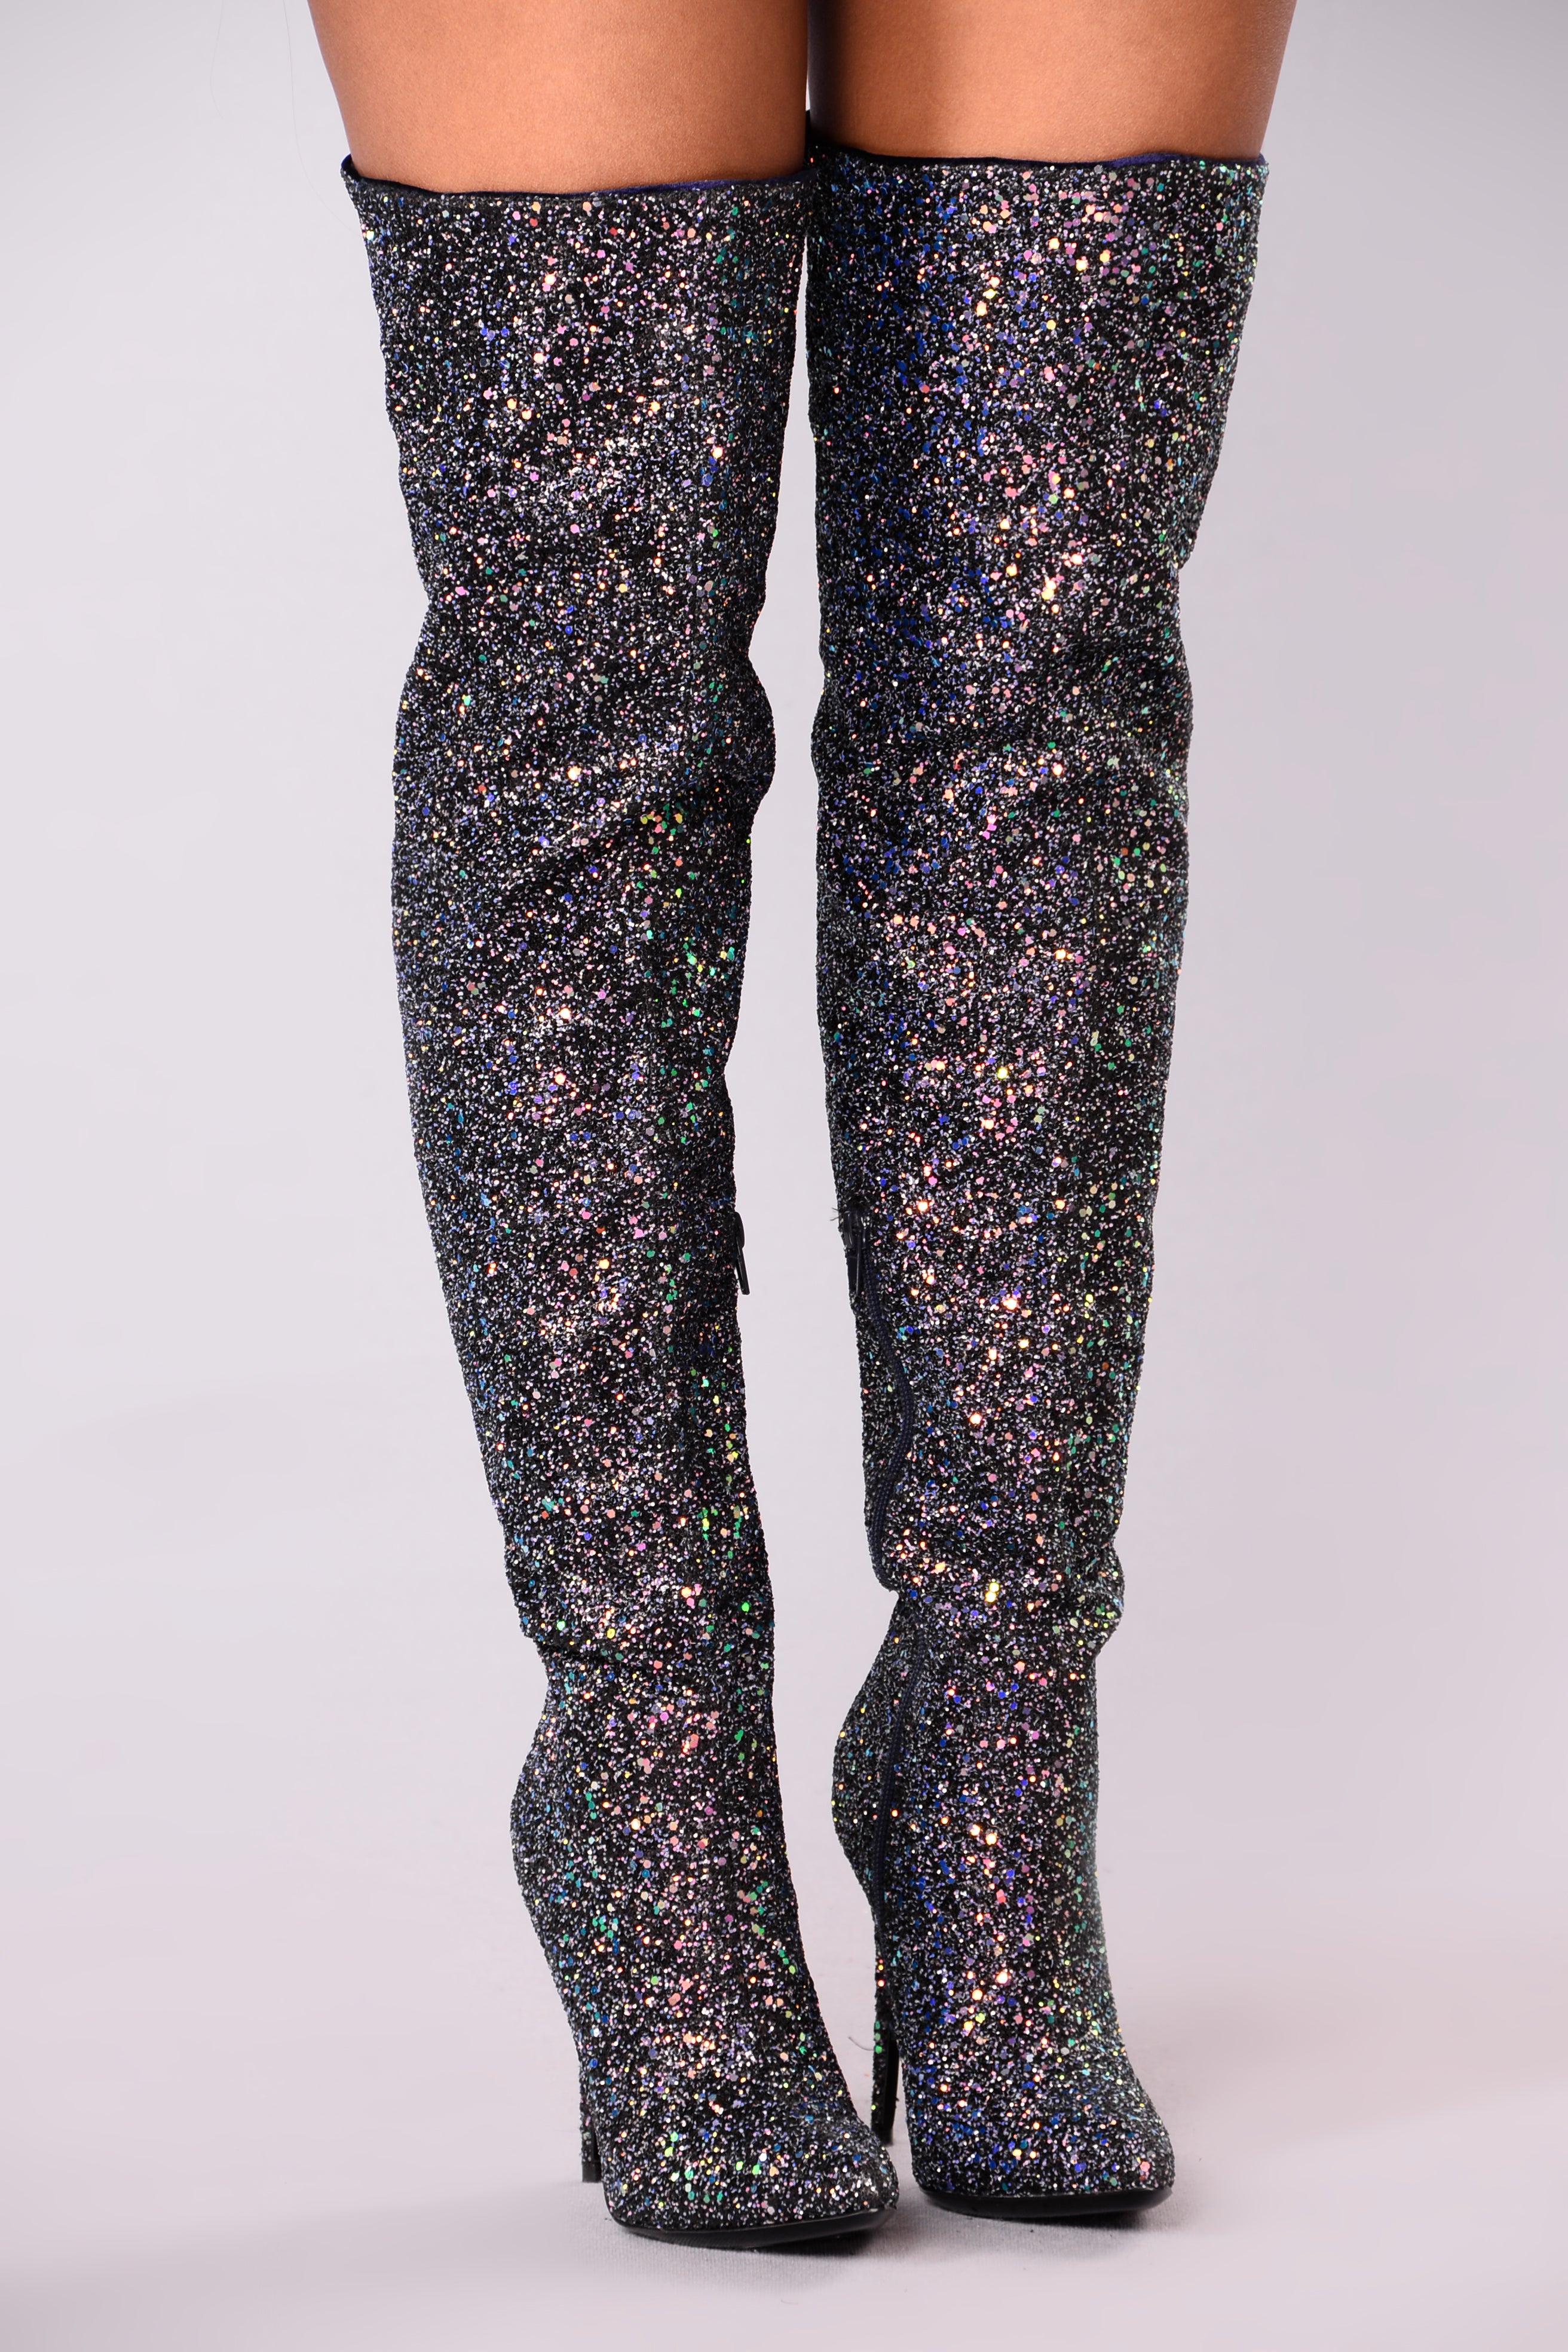 fashion nova glitter boots